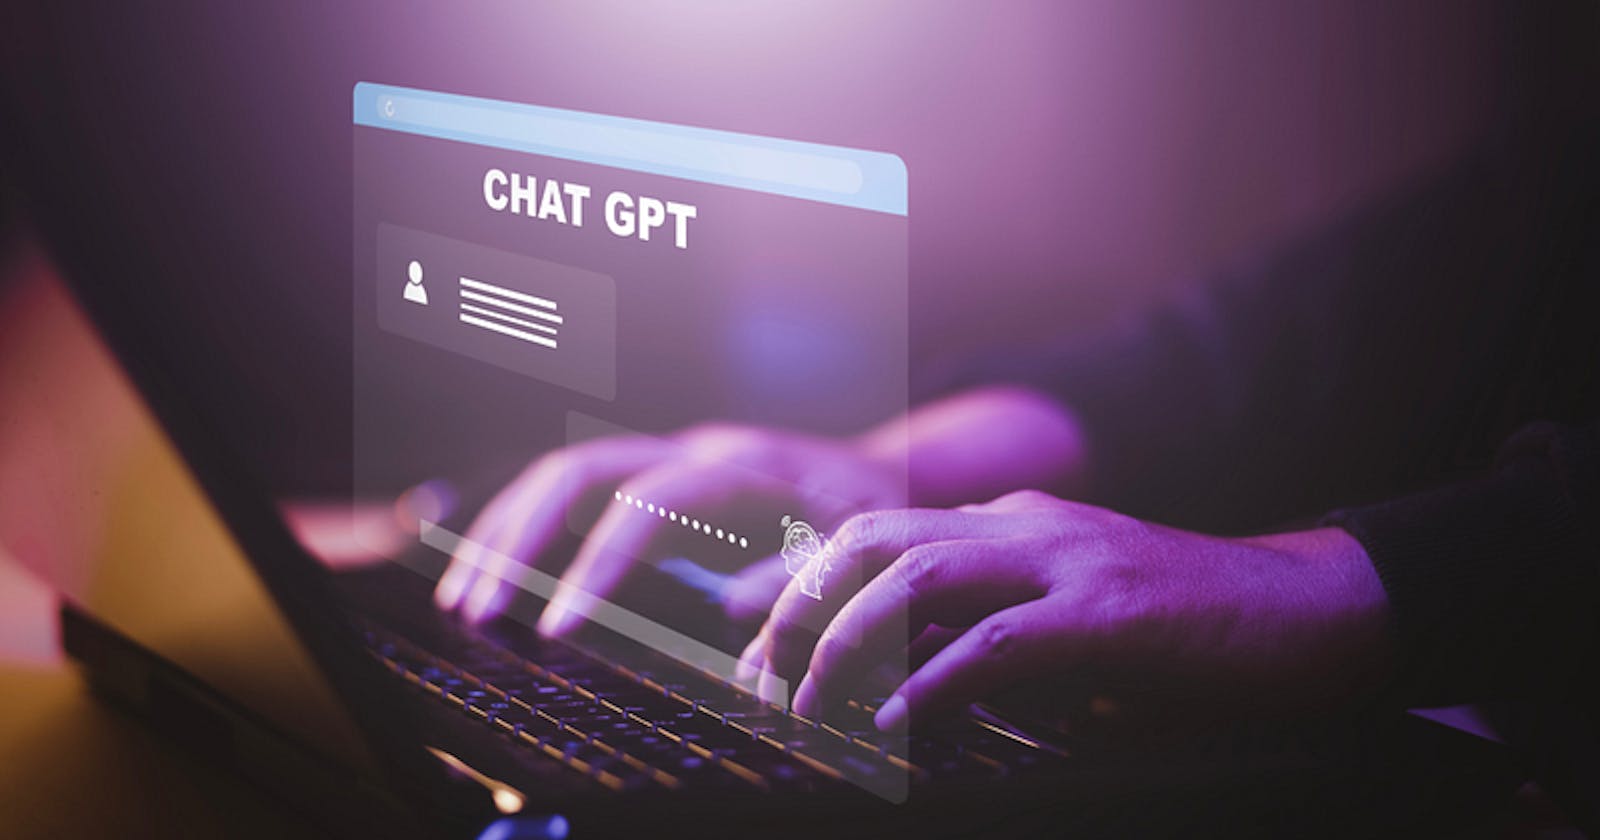 👩‍💻🔥 100+ Developer Assisting Prompts for ChatGPT 🔥👨‍💻 [Part-2]